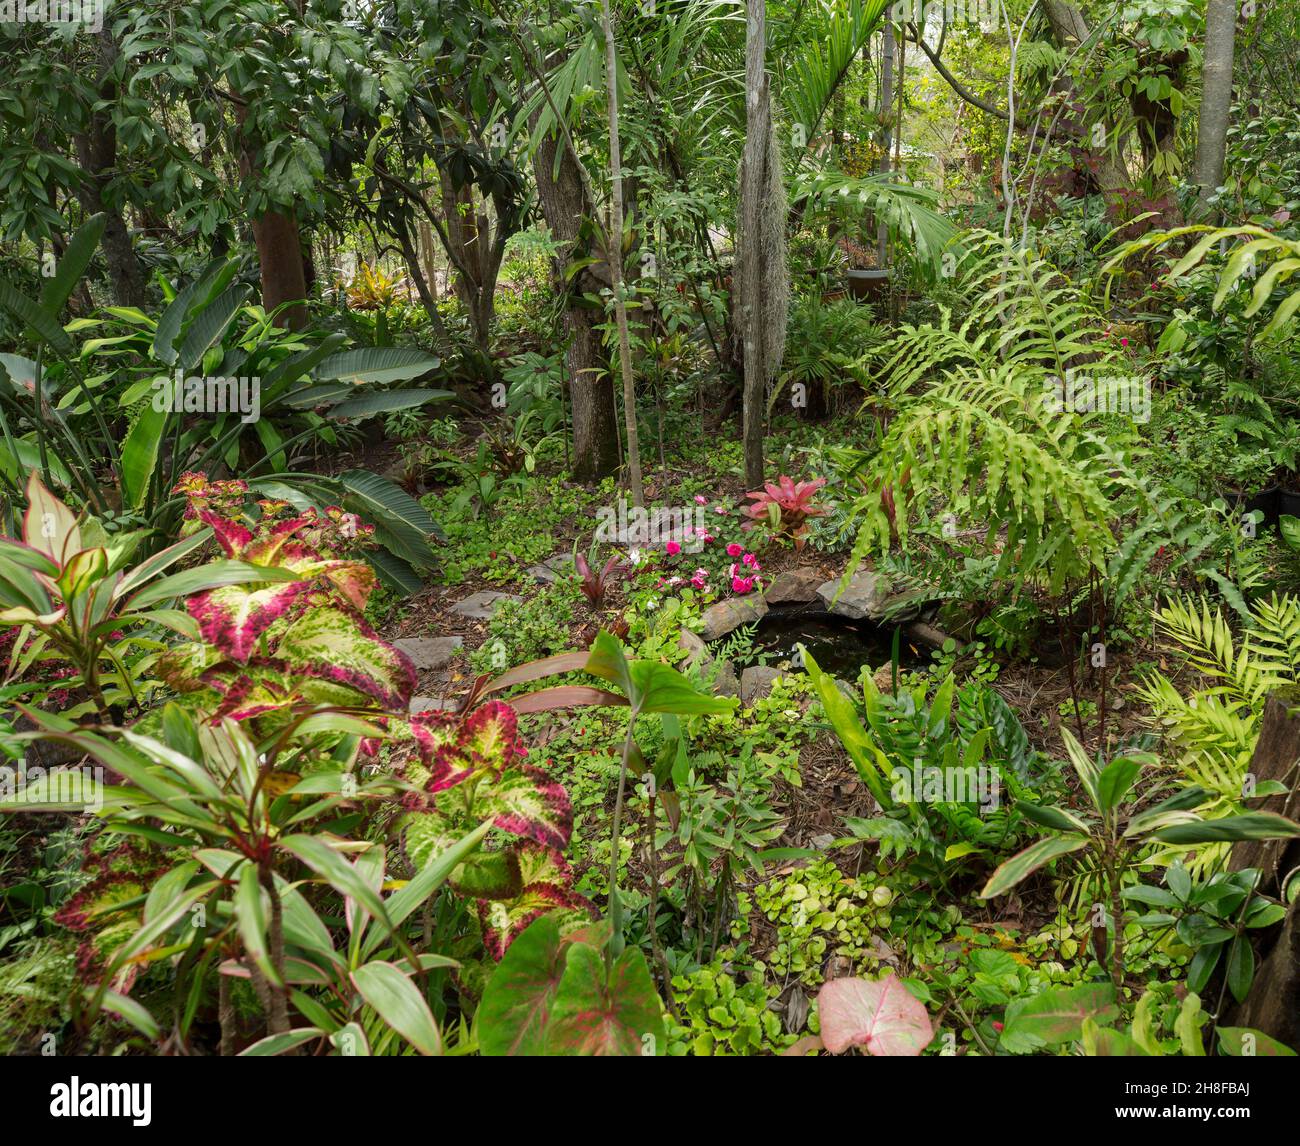 Splendido giardino della foresta pluviale con piccolo laghetto circondato da alti alberi, felci lussureggianti, piante colorate e palme in Australia Foto Stock